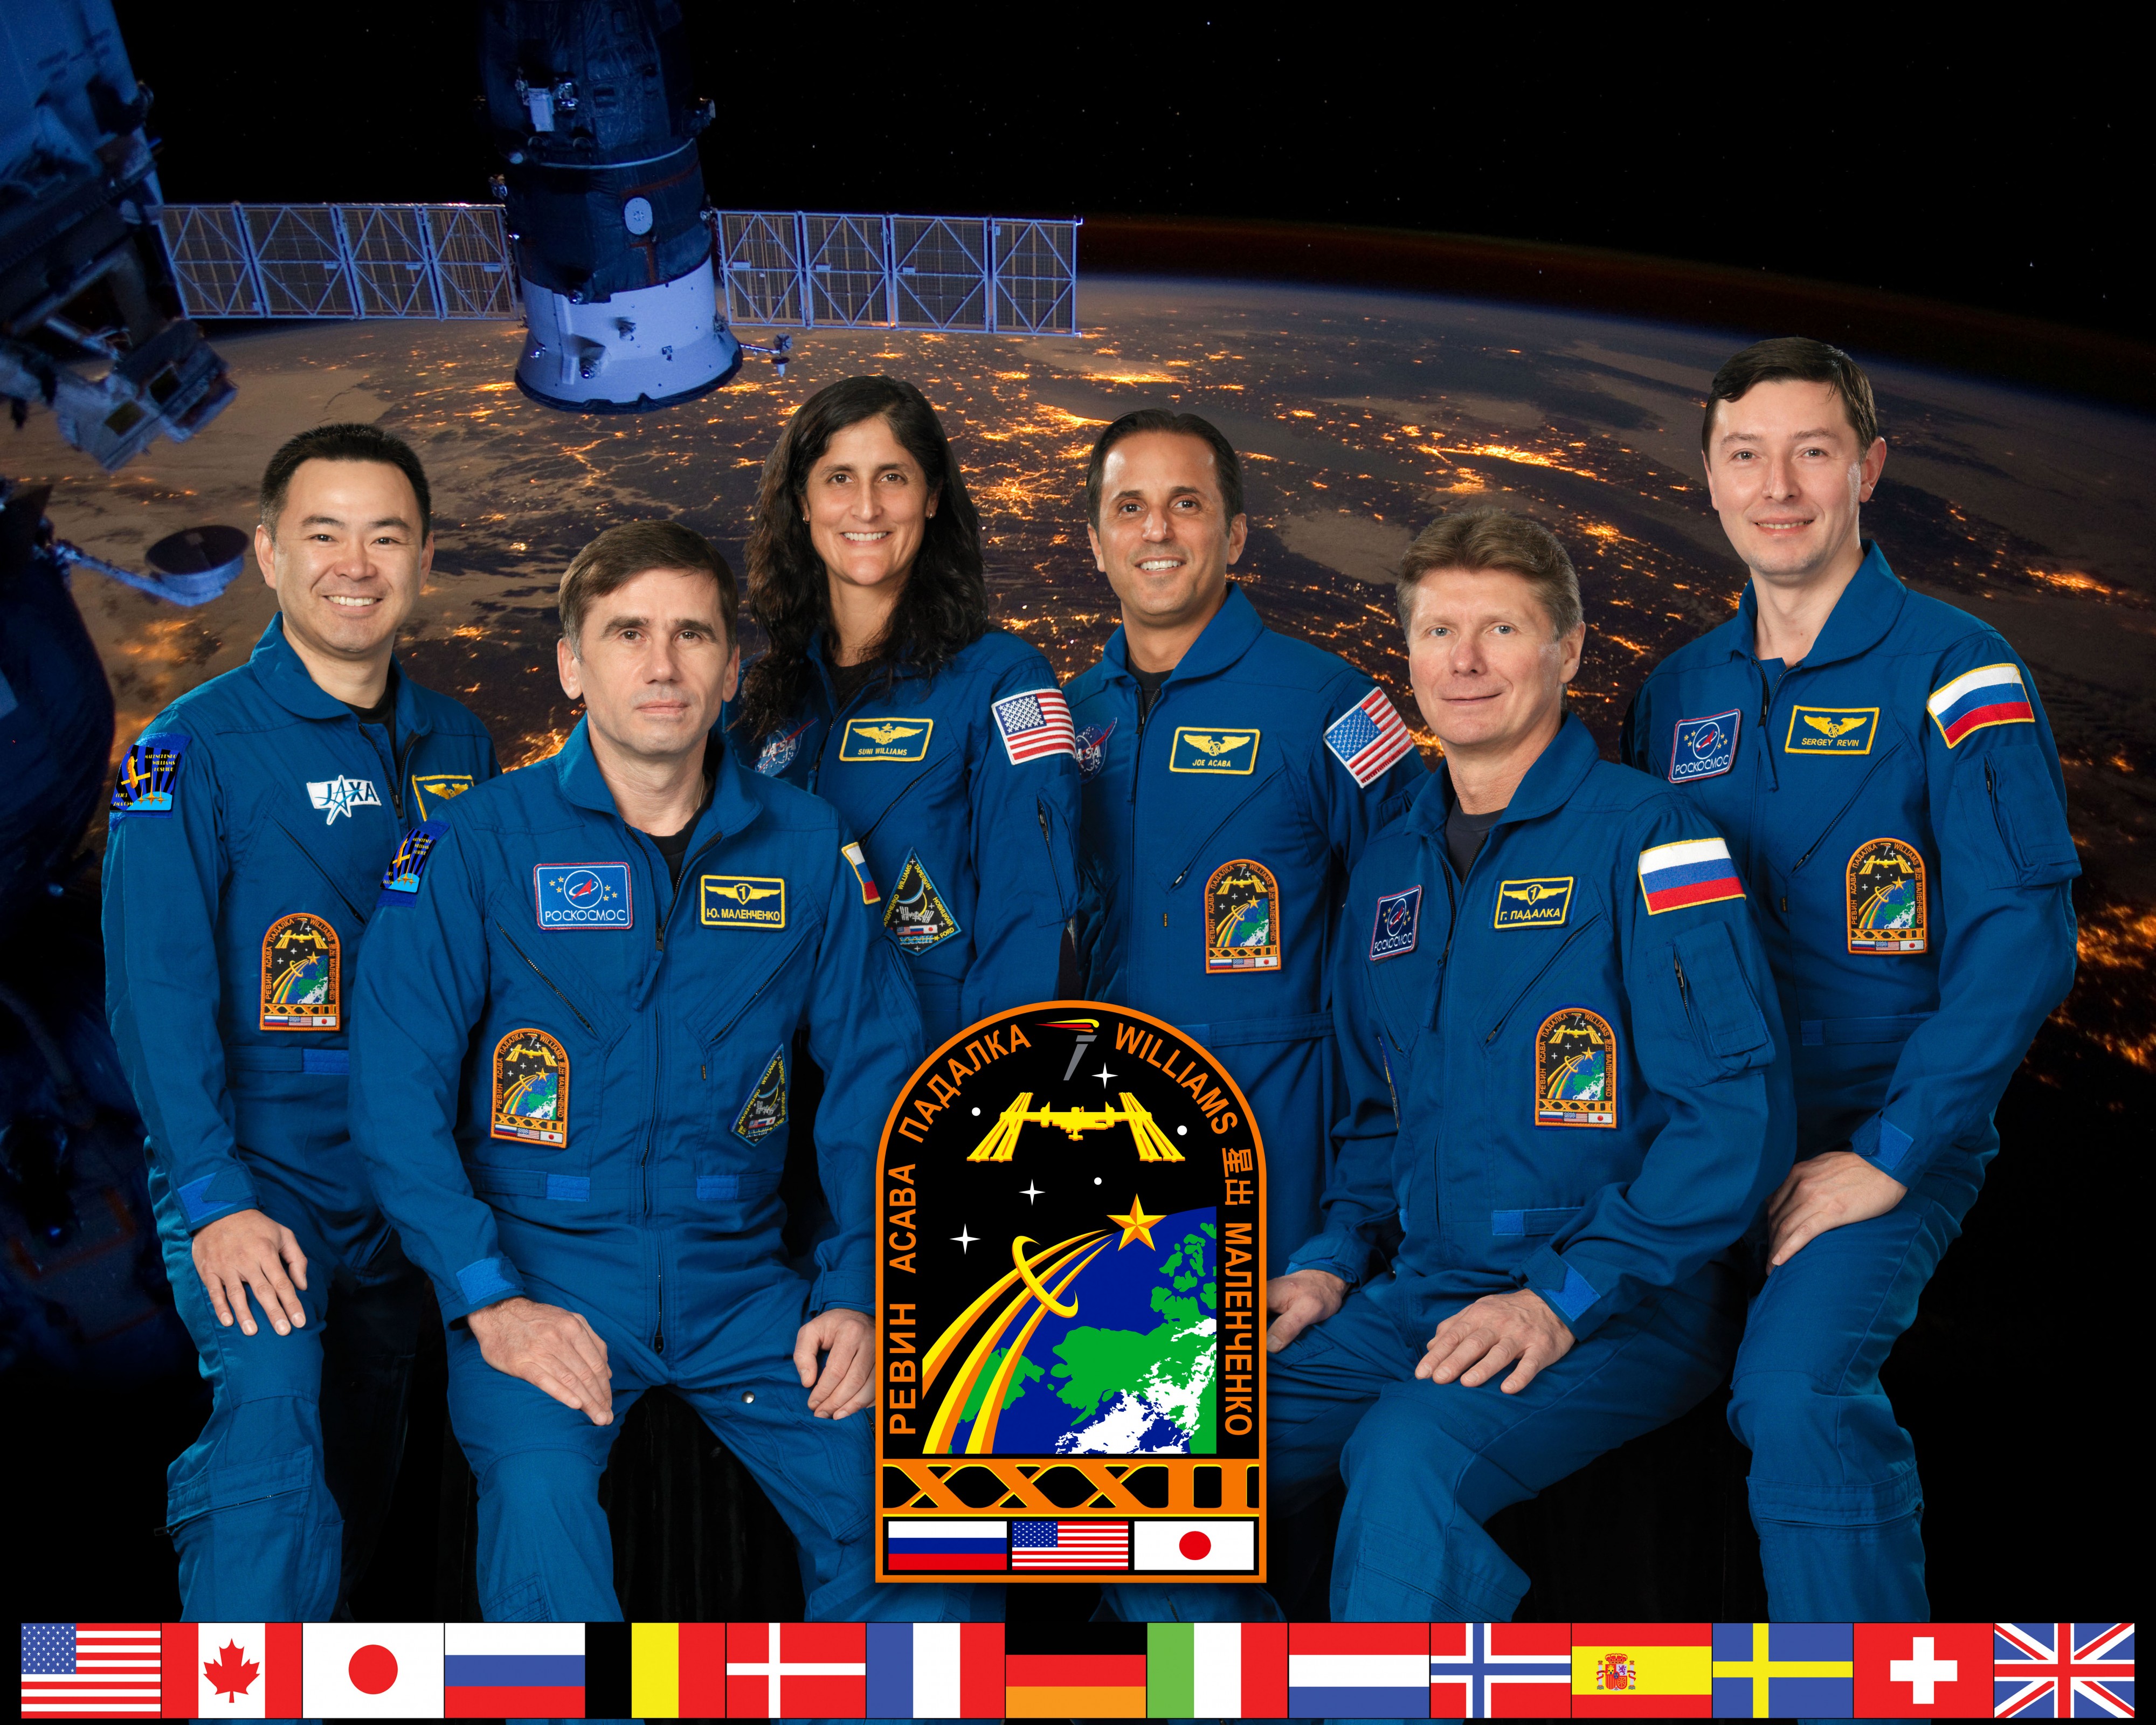 Expedition 32 crew portrait